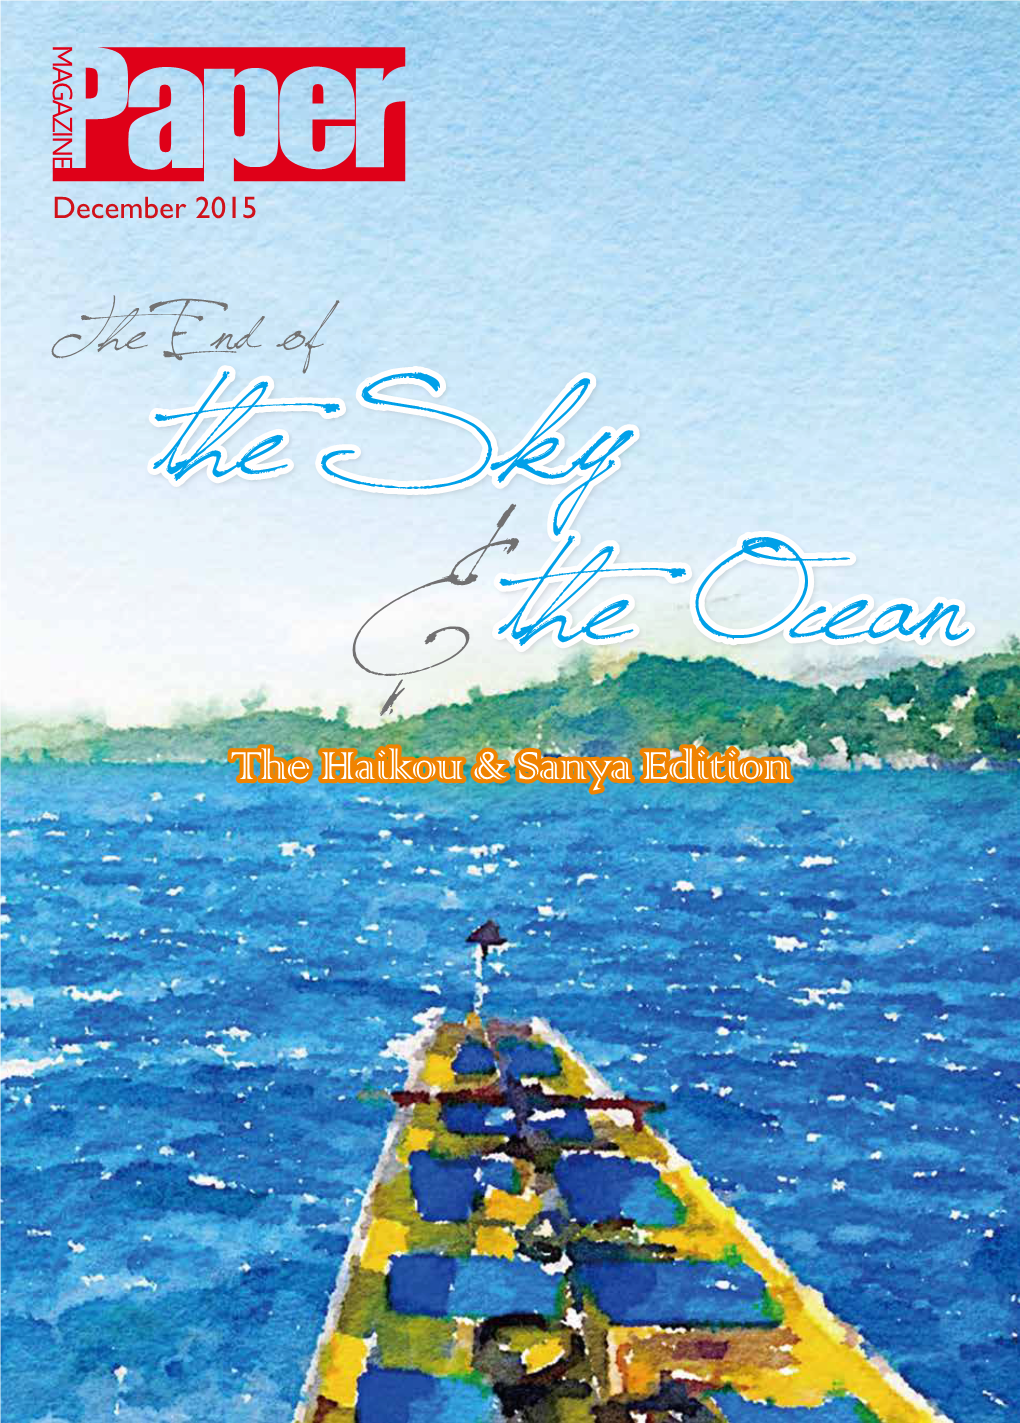 The End of the Sky & the Ocean the Haikou & Sanya Edition